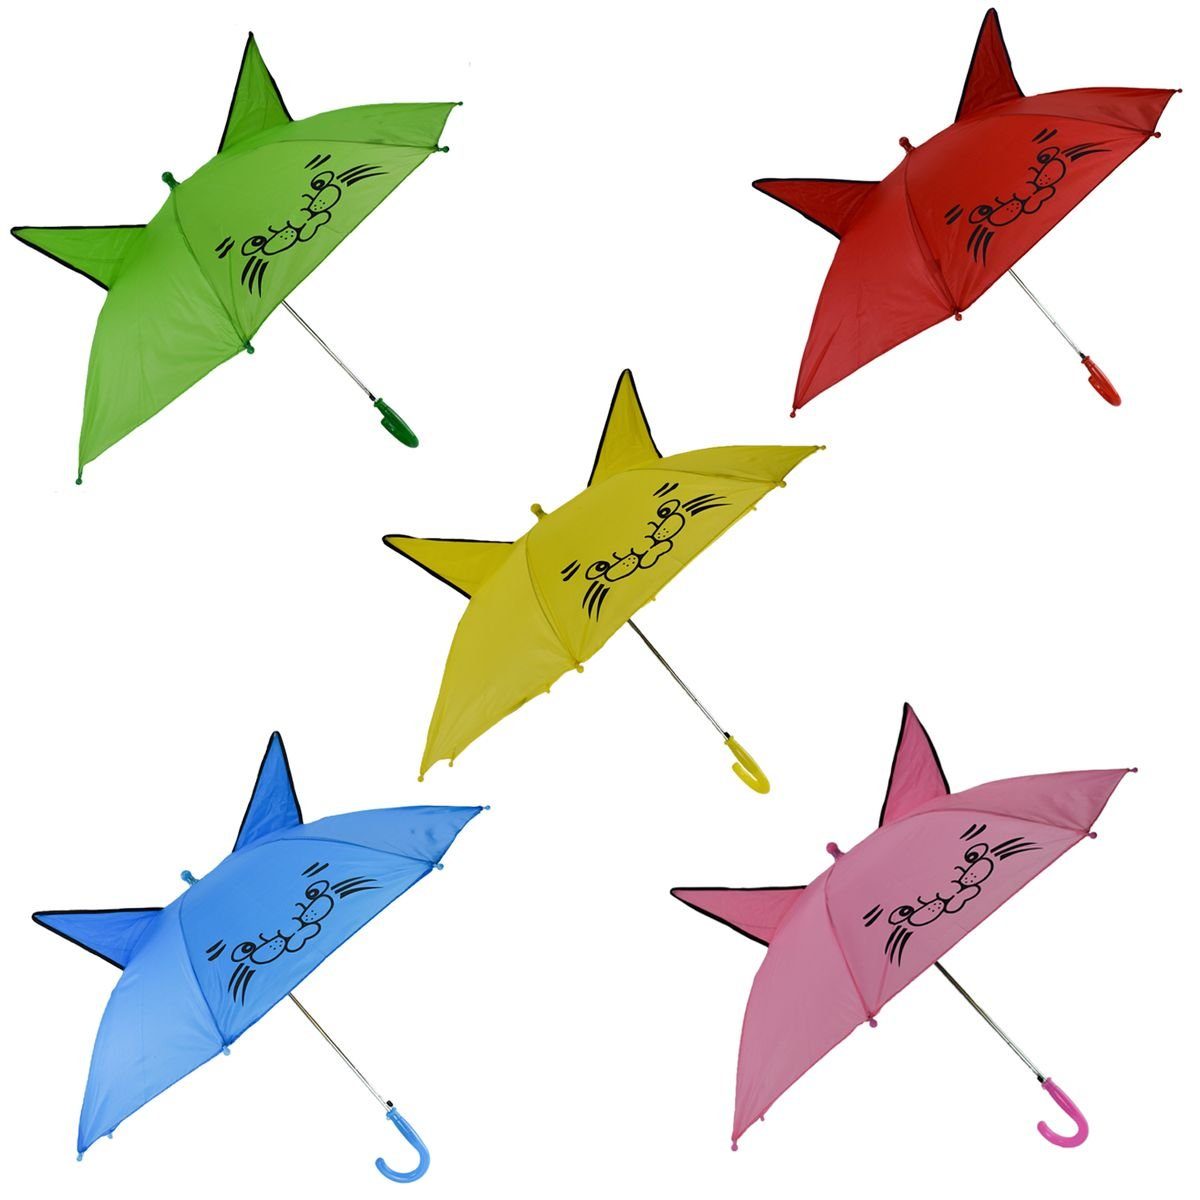 automatischer und fröhliches Ohren Öffnung, Regenschirm Stockregenschirm mit Kinder cm Ø für Design Shop Marabellas 90 Grün